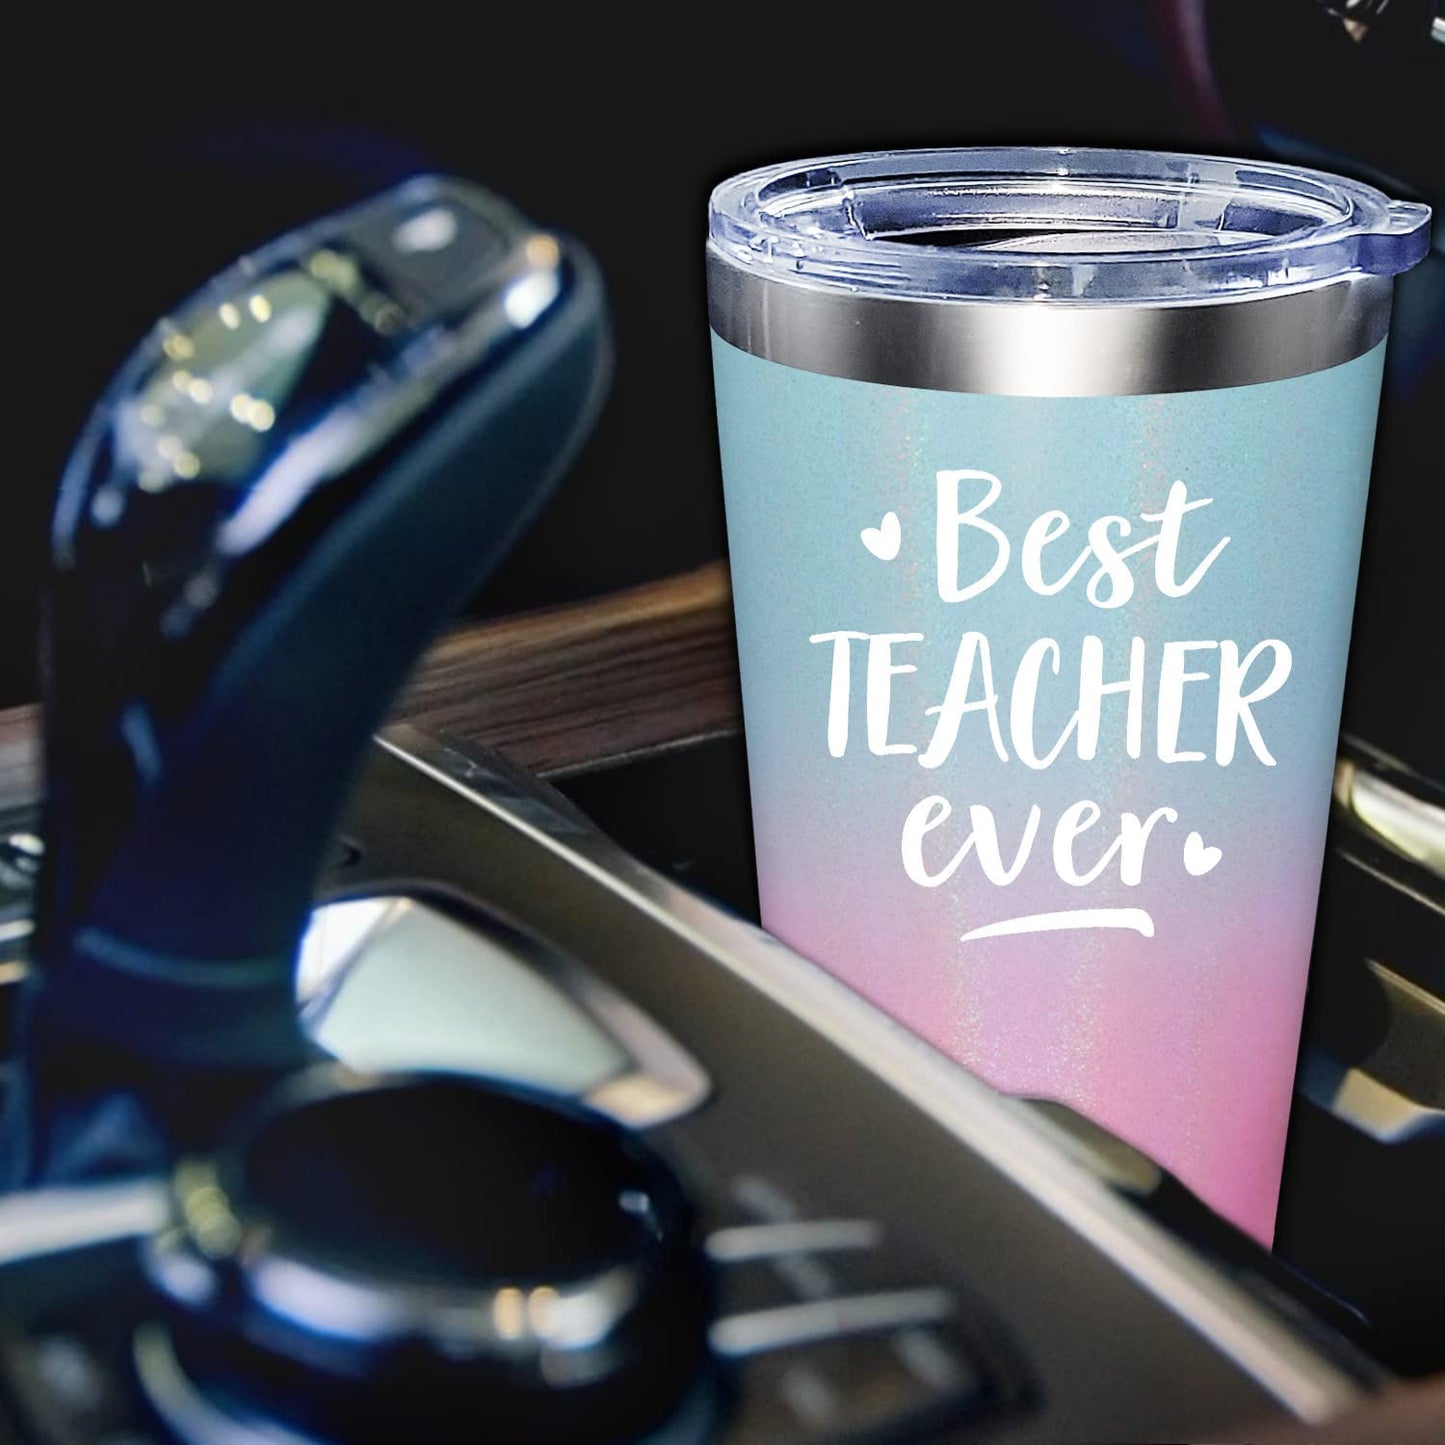  Best Teacher Ever - Teacher Appreciation Gifts, Teacher Gifts for Women, End of Year Teacher, Retirement Gifts - Teacher Gifts from Student, Teachers Day- Tumbler Cup